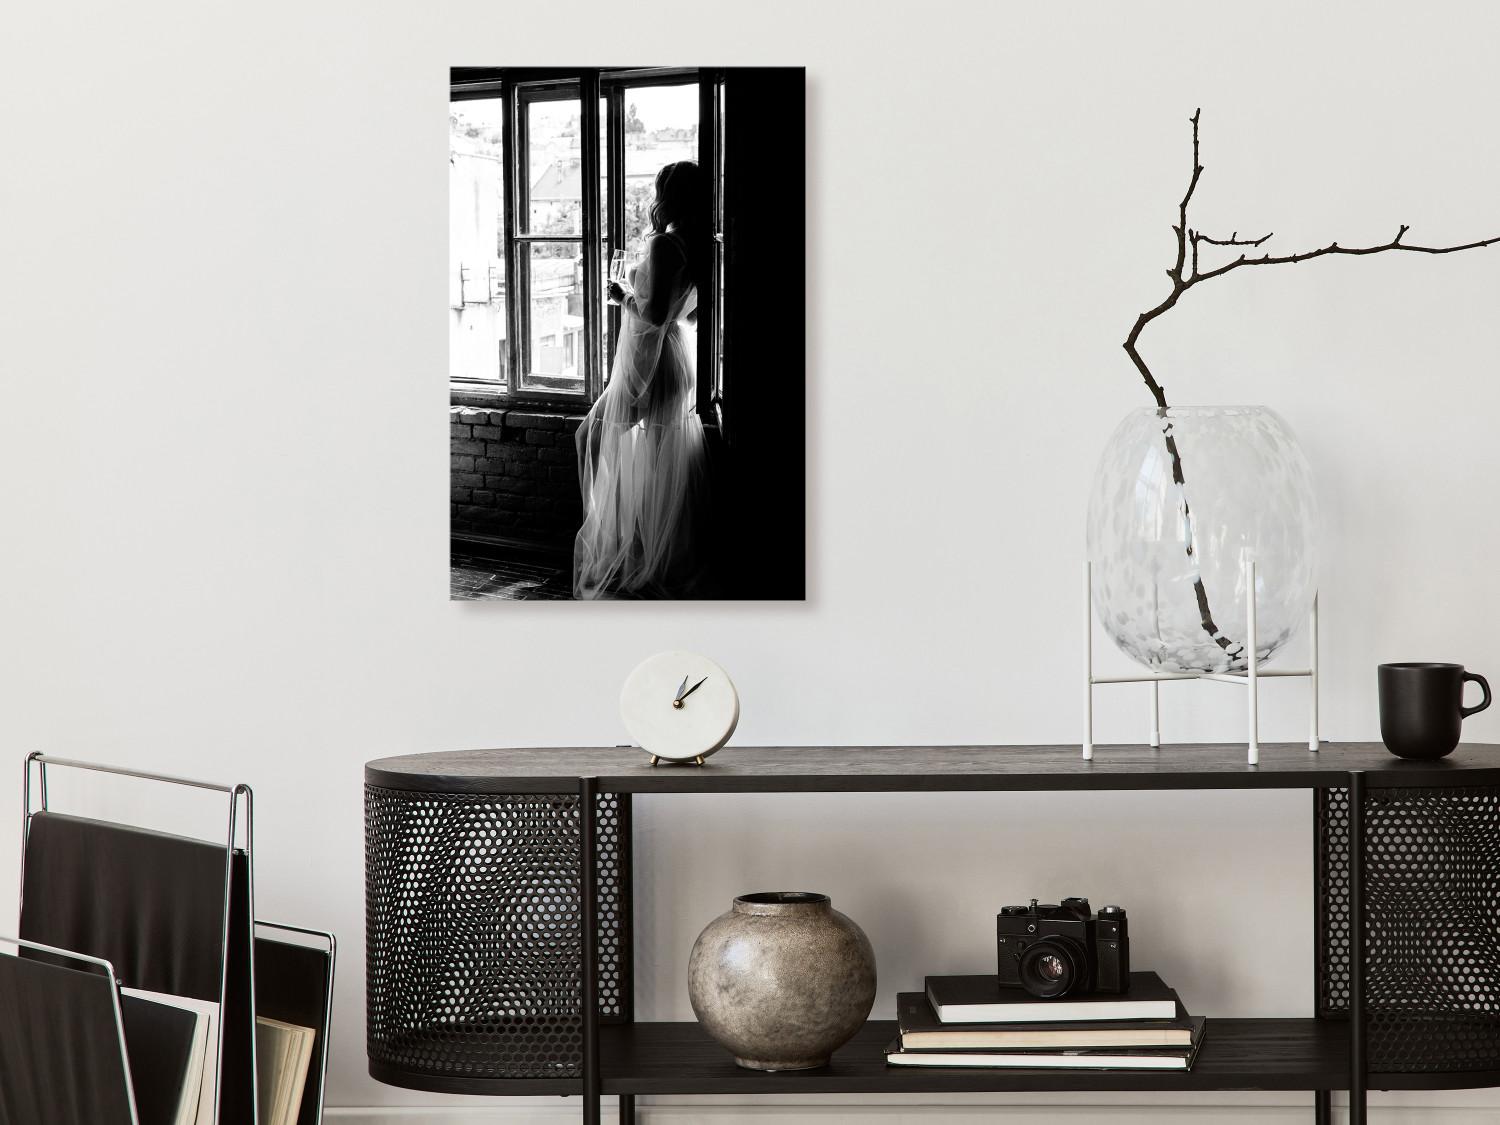 Cuadro Mujer con champán - foto en blanco y negro con la silueta de una mujer